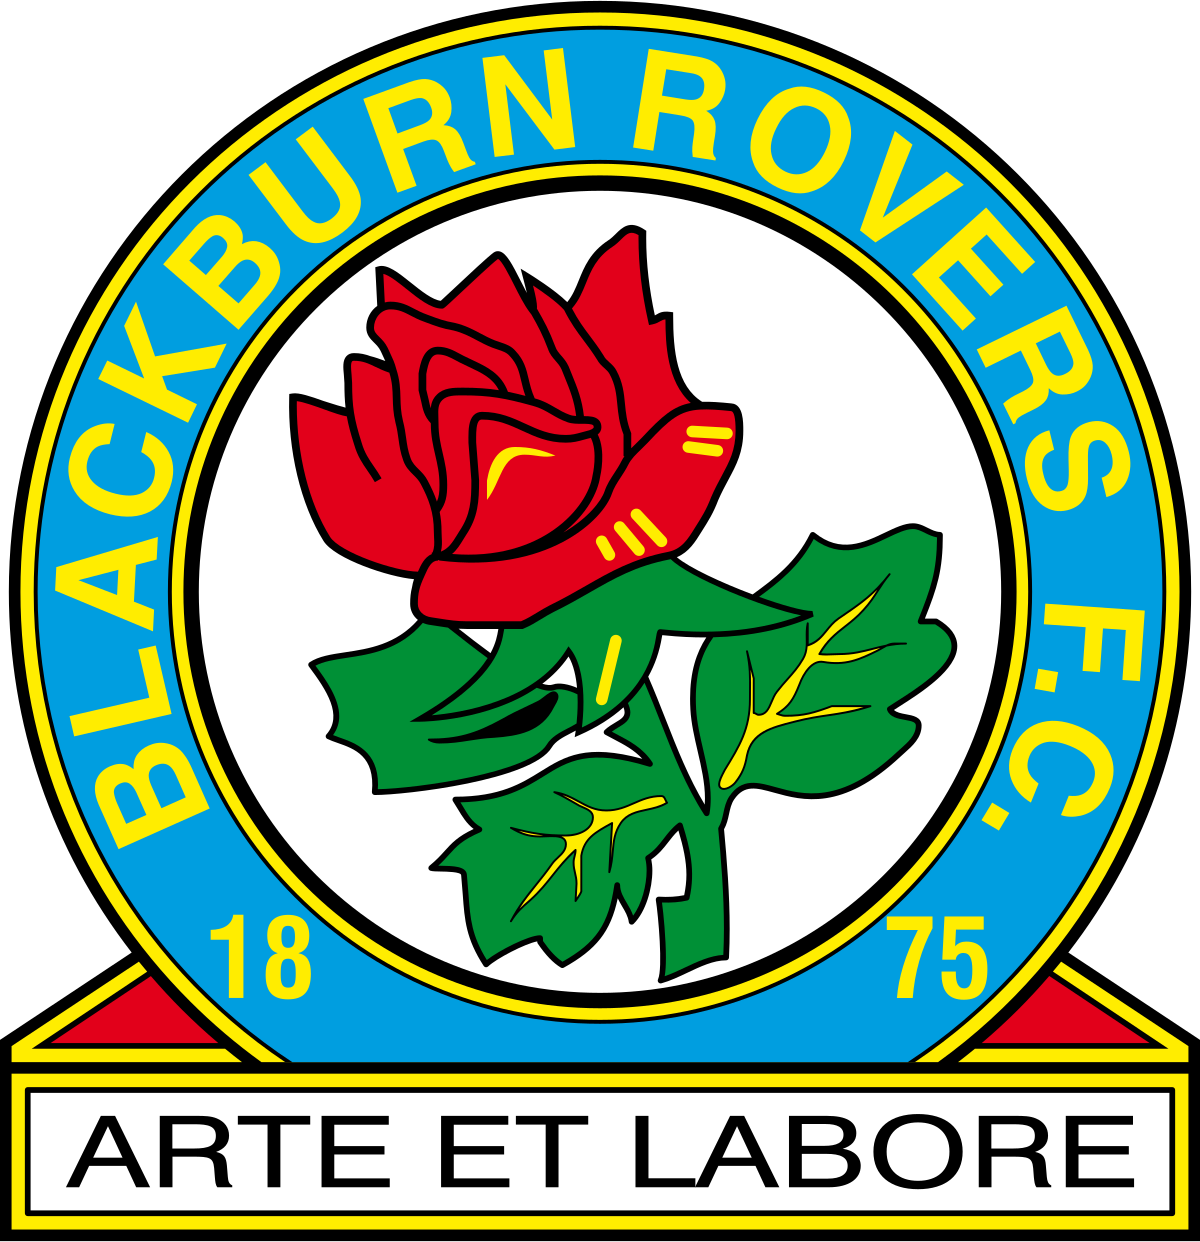 Блекбърн U23 - Logo